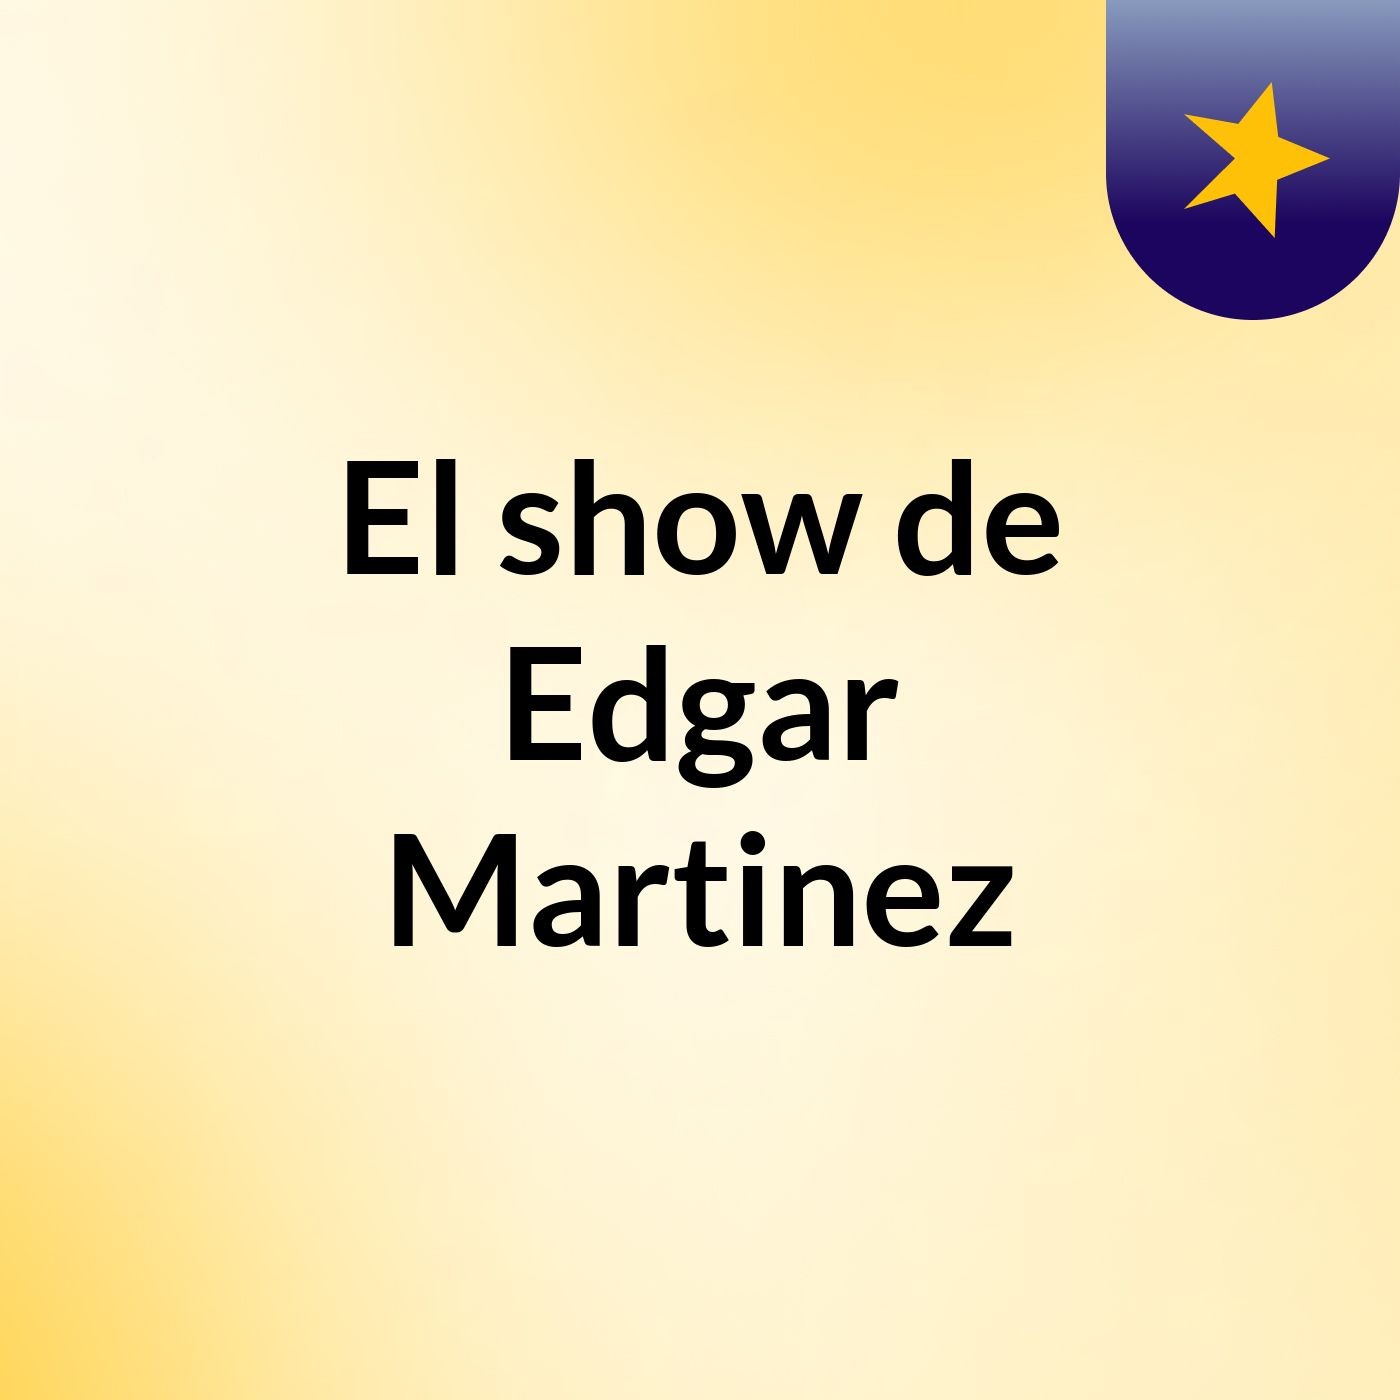 El show de Edgar Martinez